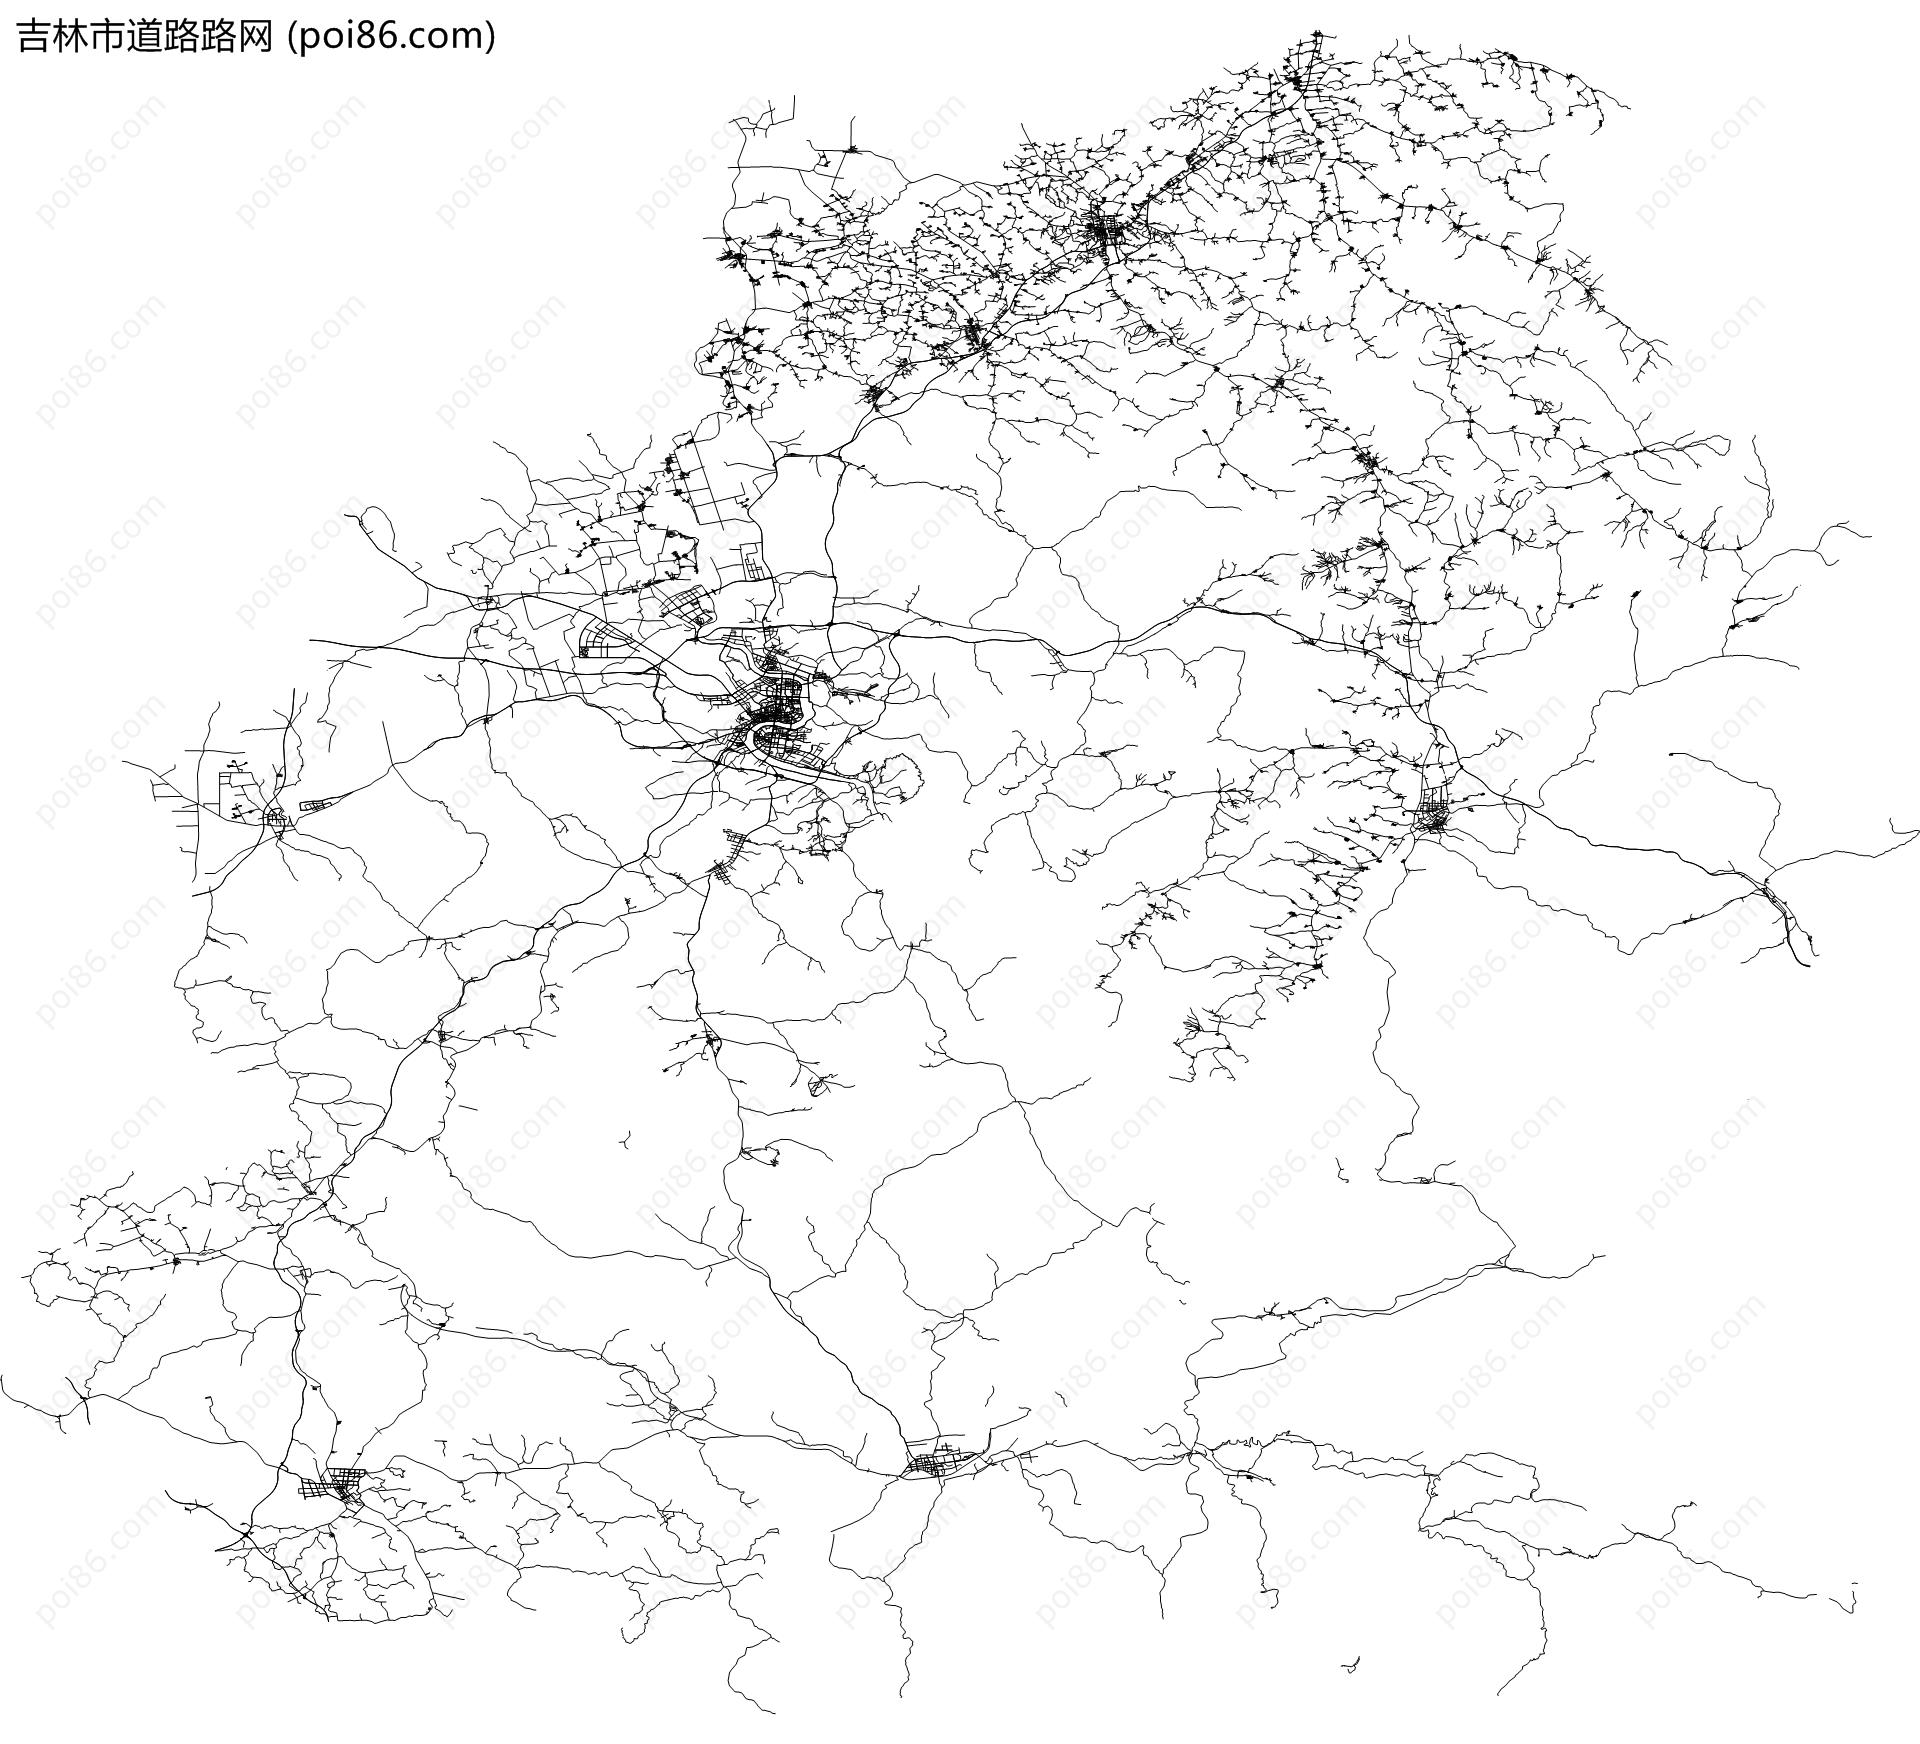 吉林市道路路网地图